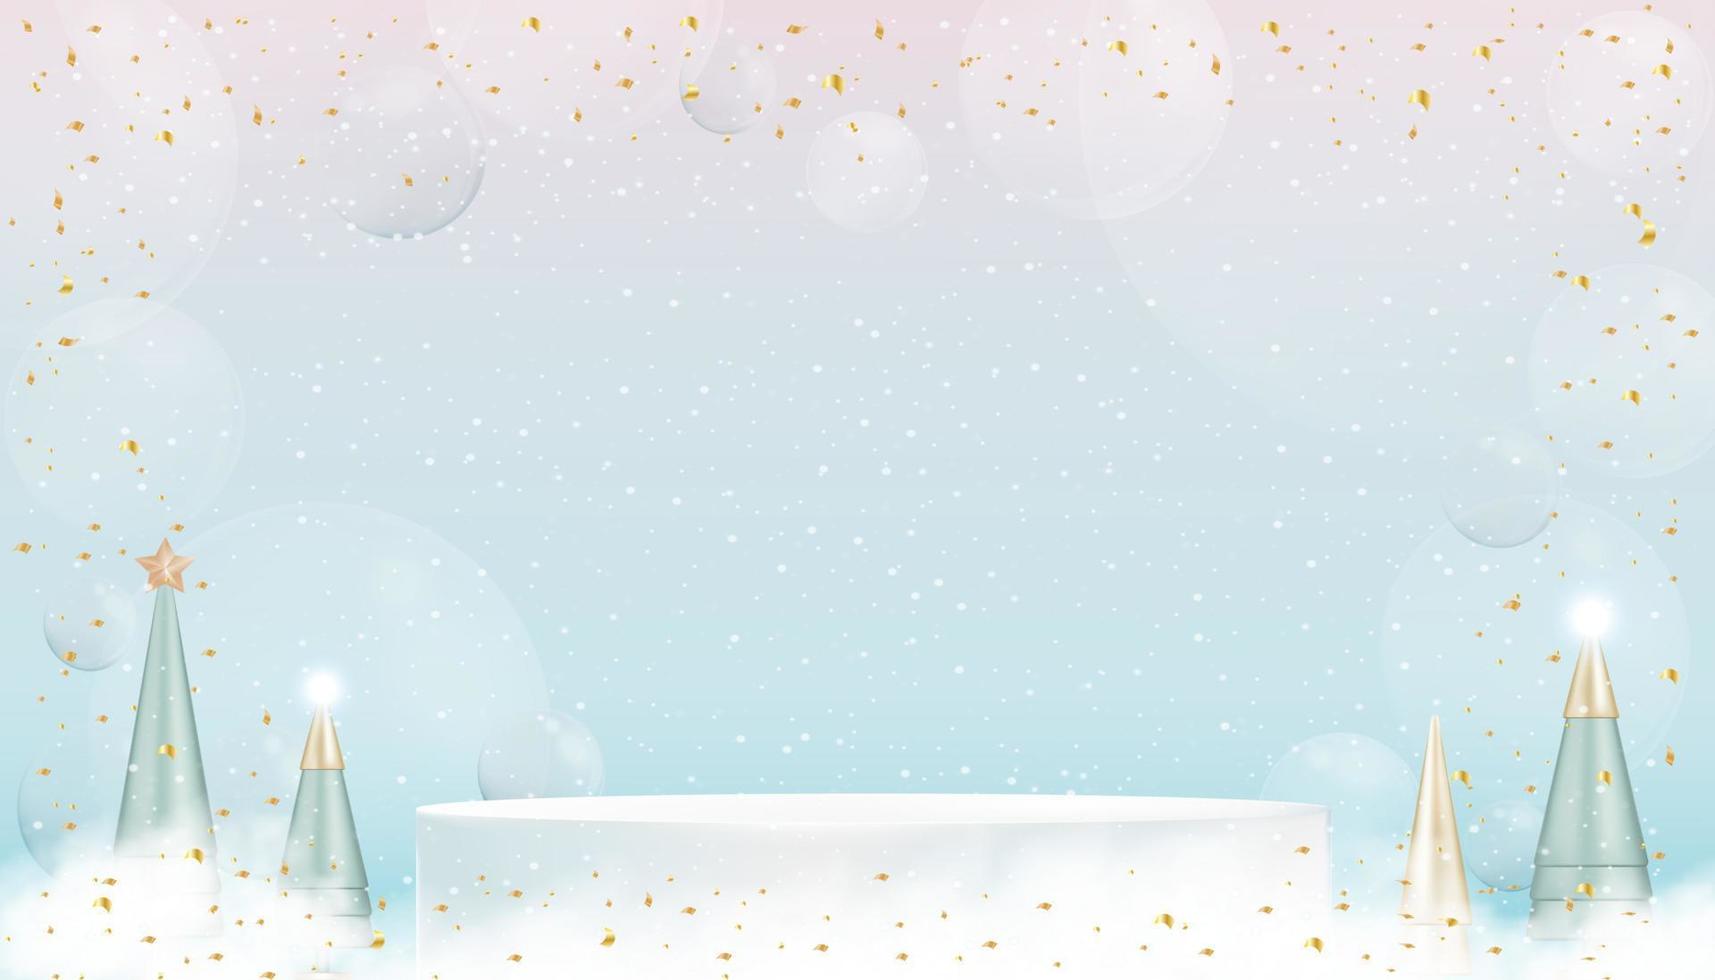 Weißes Podium des 3D-Anzeigesockels mit konischem Baum, Goldelementen und Blasen auf rosa, blauem Hintergrund, Vektordesignkonzept für Weihnachtskarte. Hintergrund für Winterferienverkauf, Werbekonzept vektor